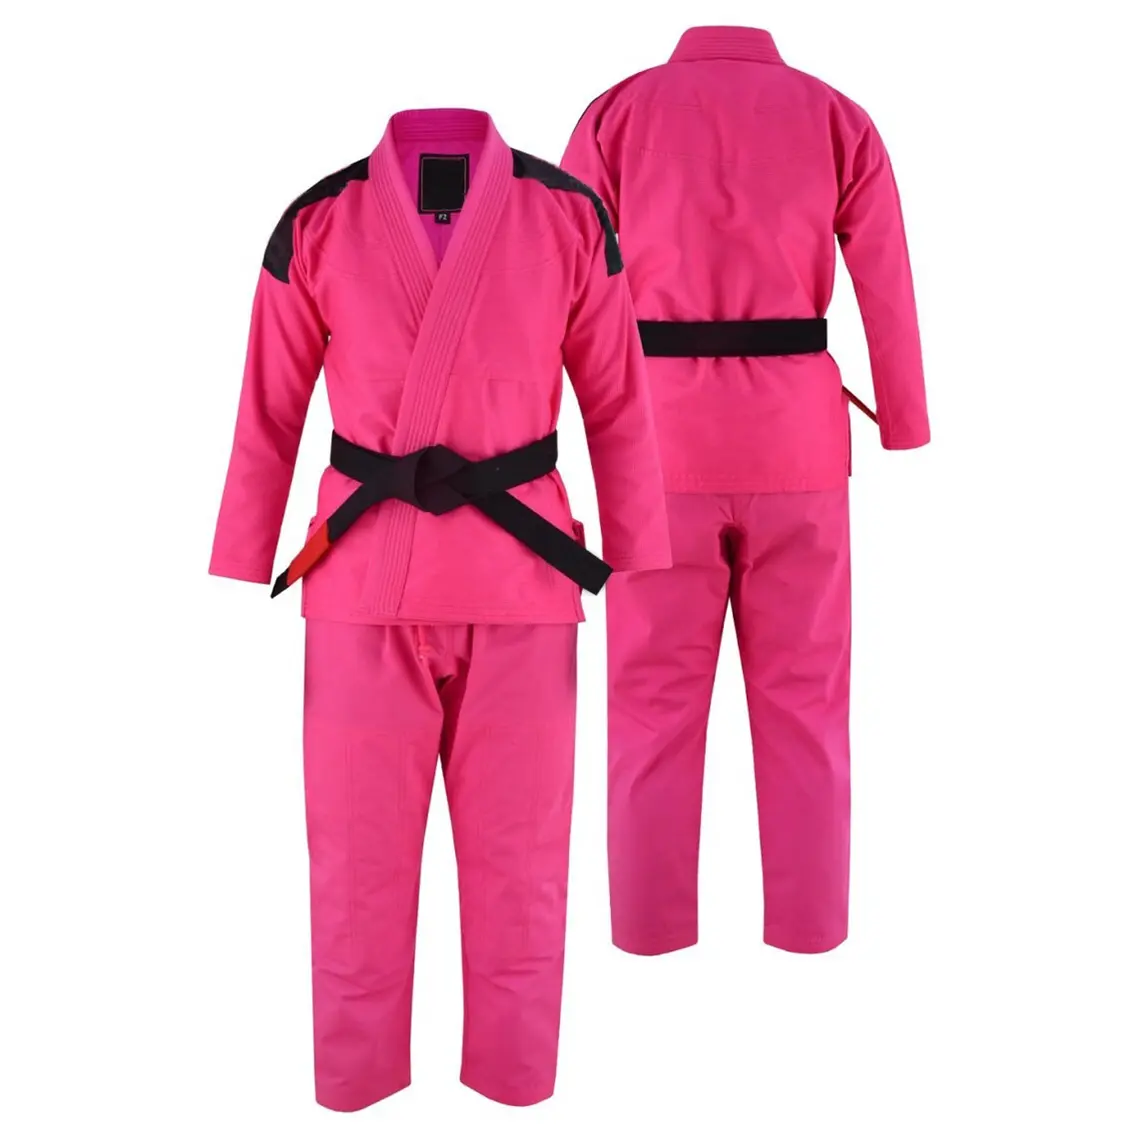 最新デザインプレミアム品質売れ筋ピンク色ブラジル柔術ユニフォームカスタムメイドBjjユニフォーム